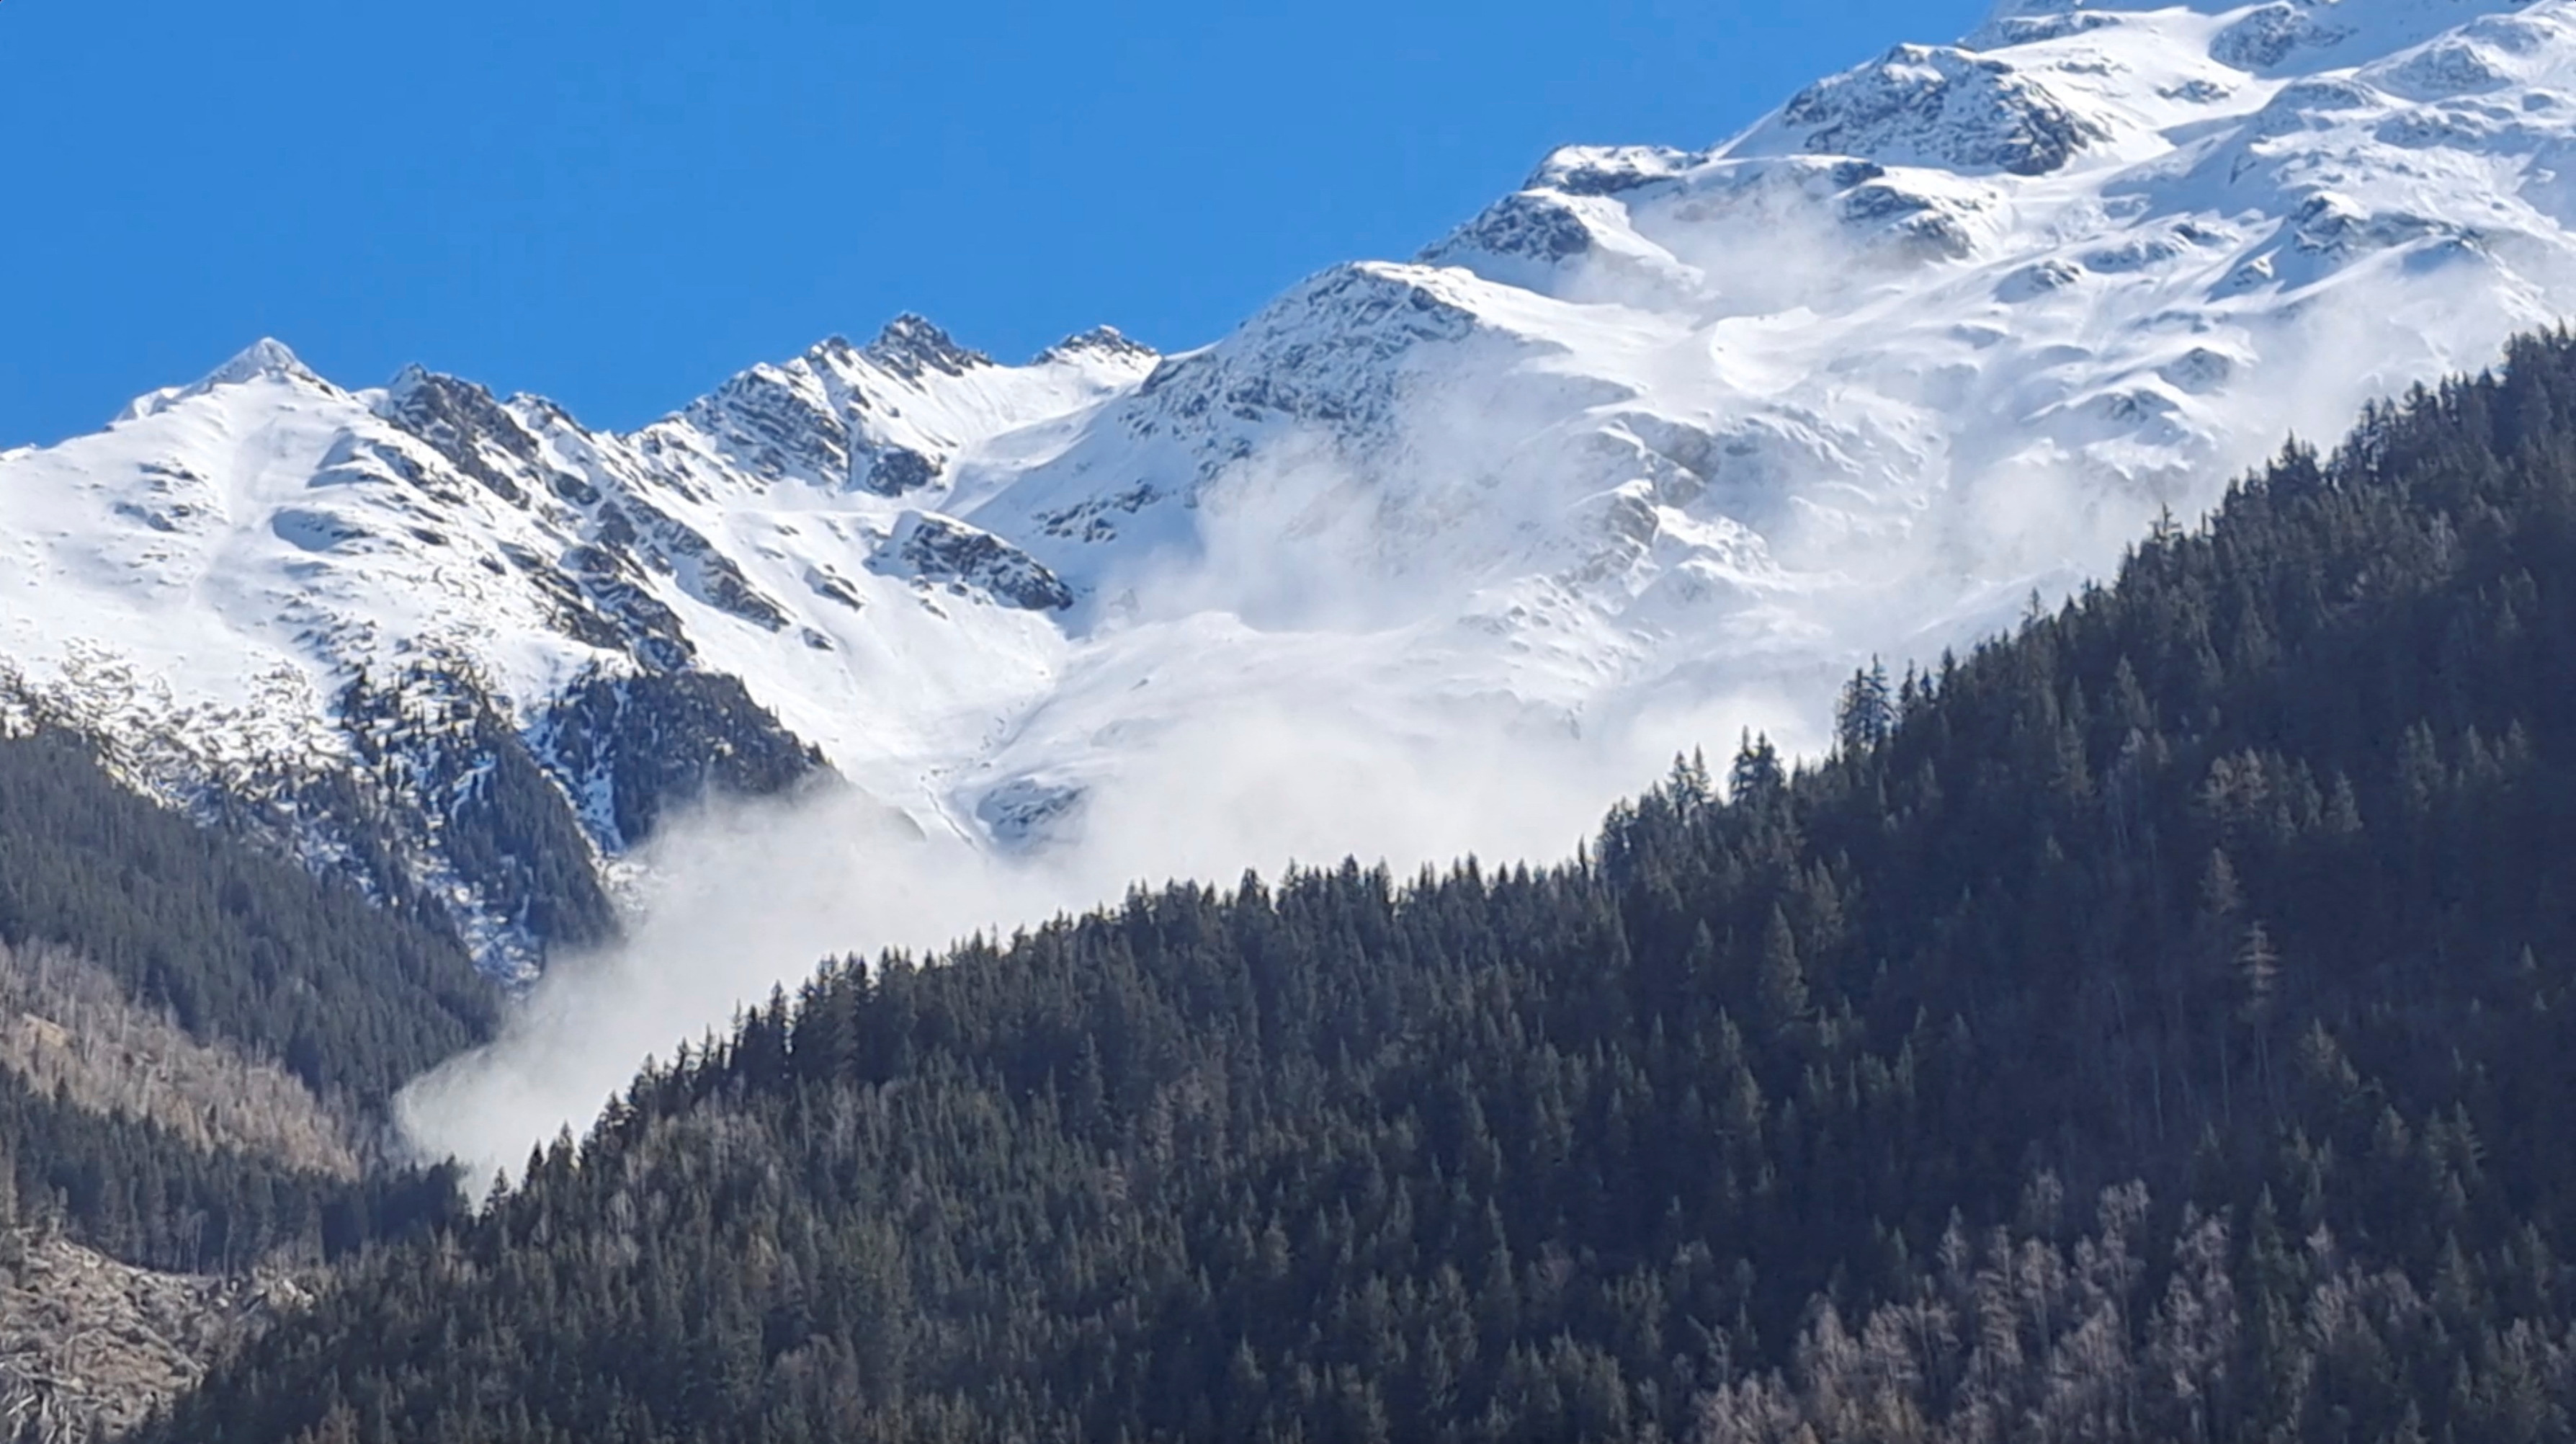 Visão geral mostra avalanche nos Alpes franceses